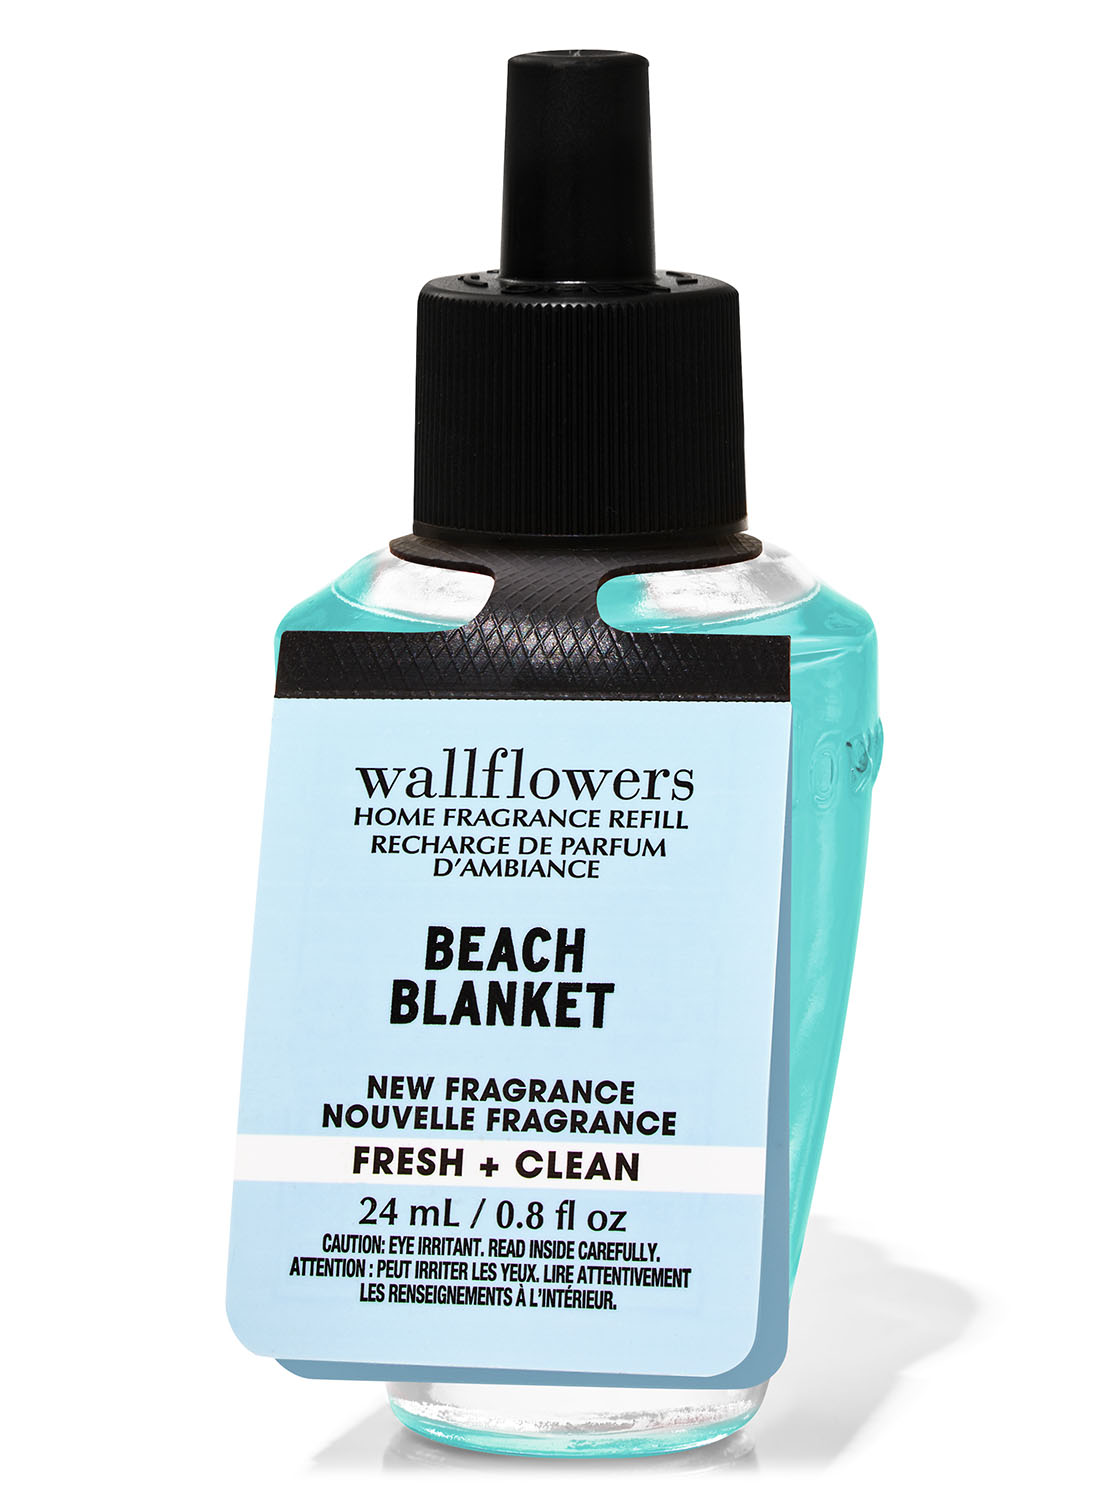 Beach Blanket Wallflowers Fragrance Refill